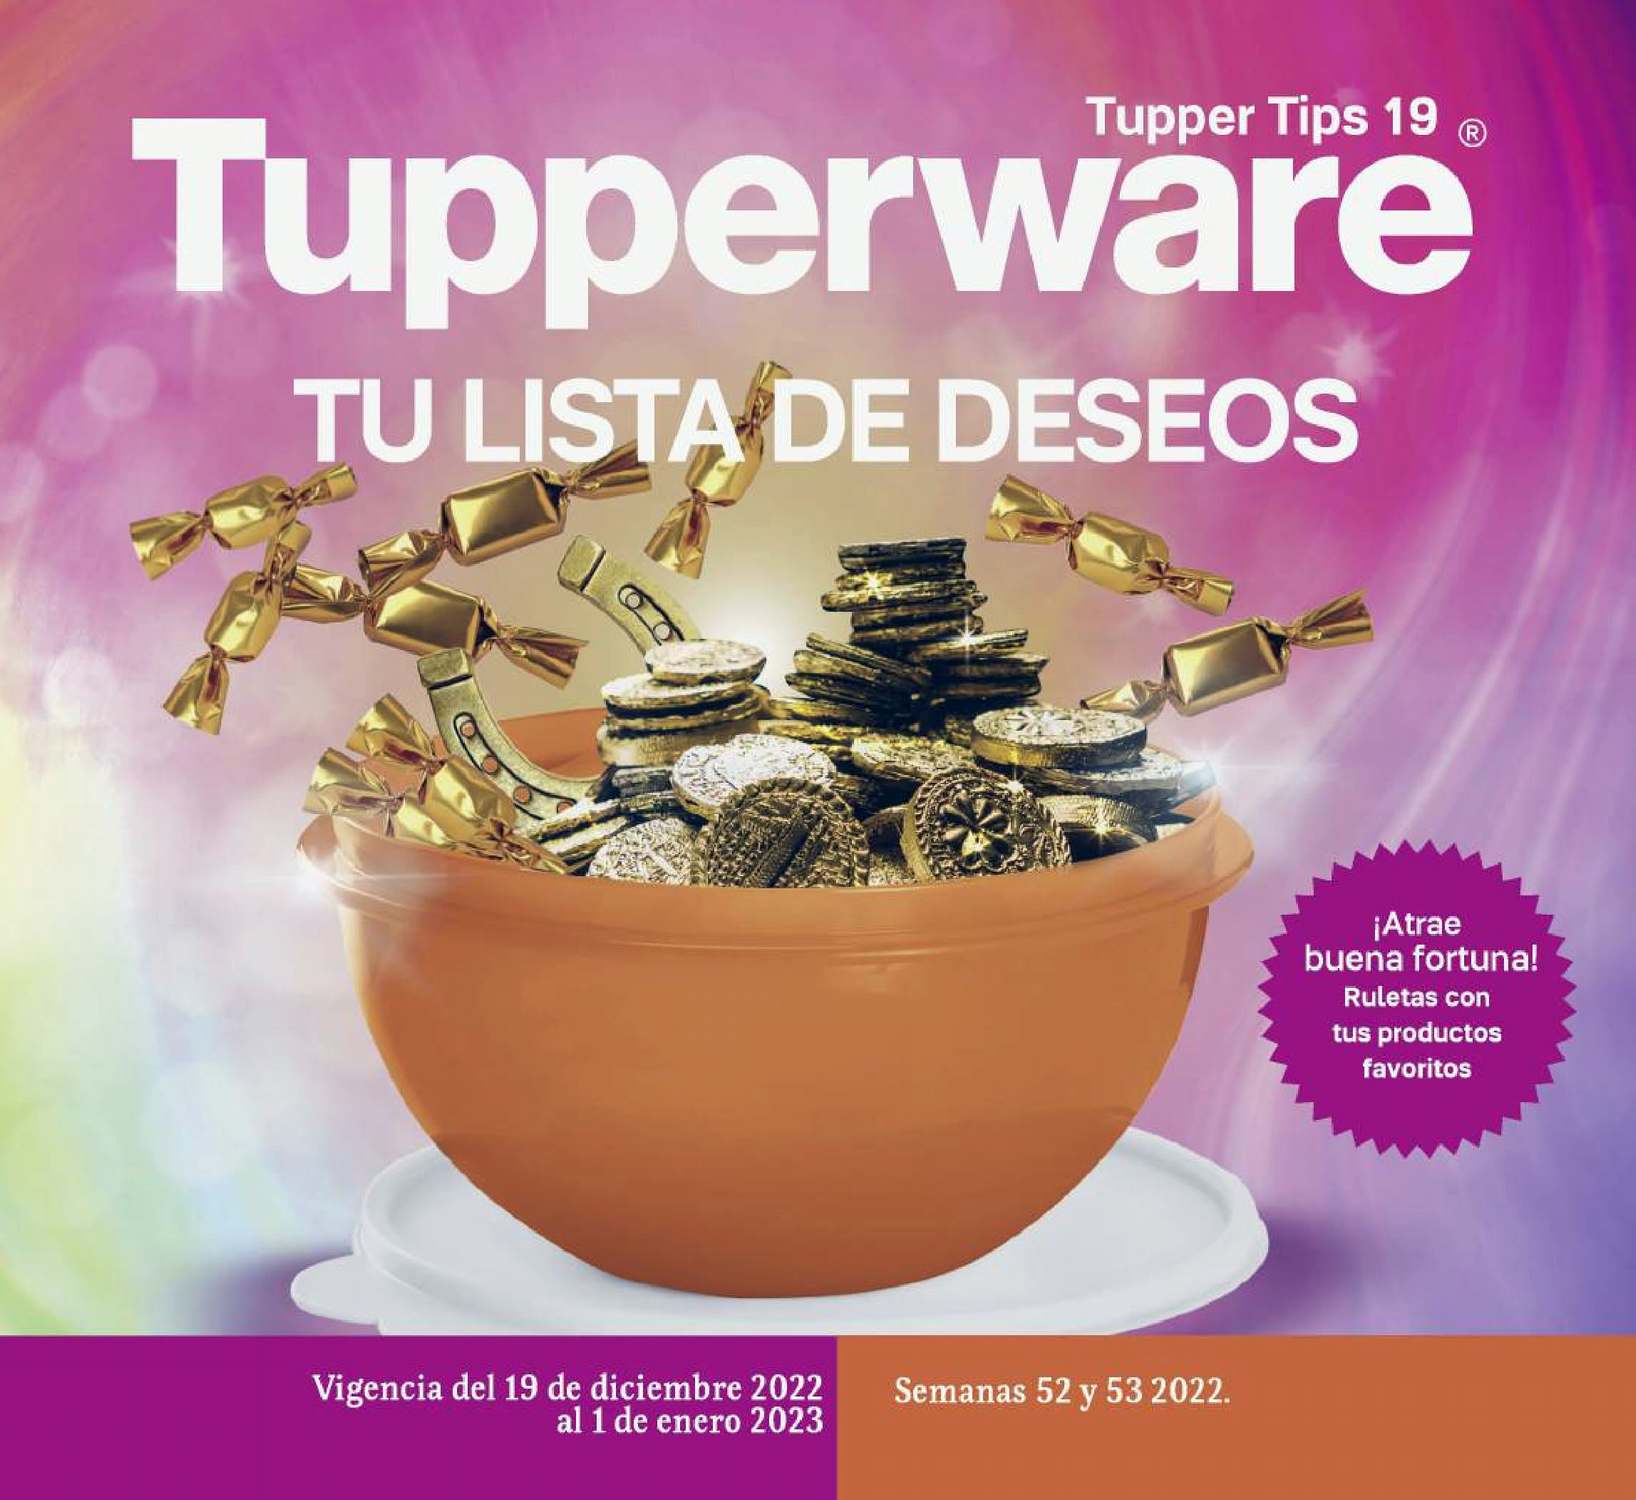 Catálogo Tupperware Tupper Tips 19 2022 México